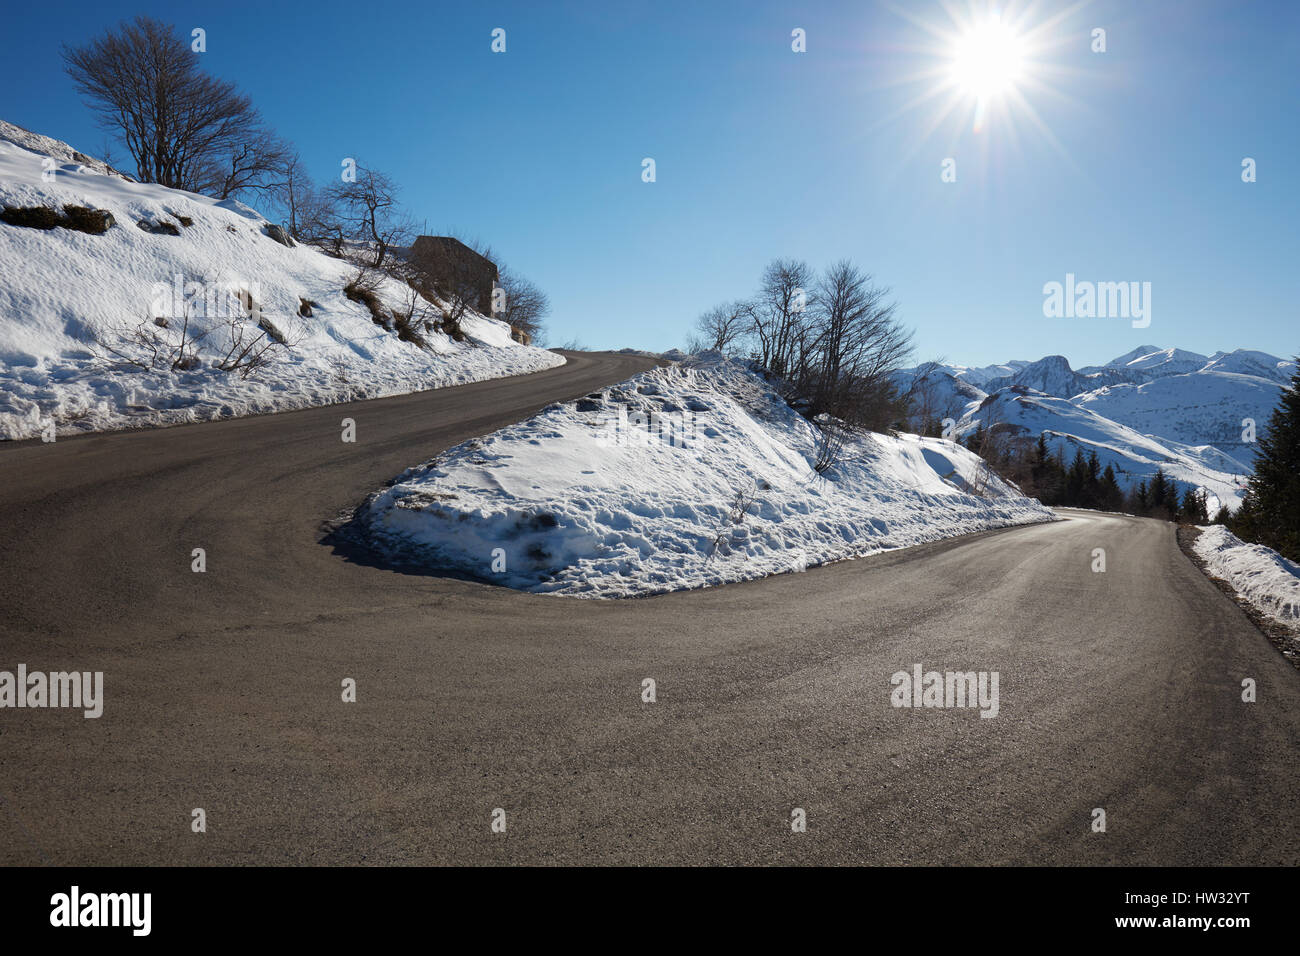 Route de montagne vide courbe avec de la neige sur les côtés, ciel bleu et soleil Banque D'Images